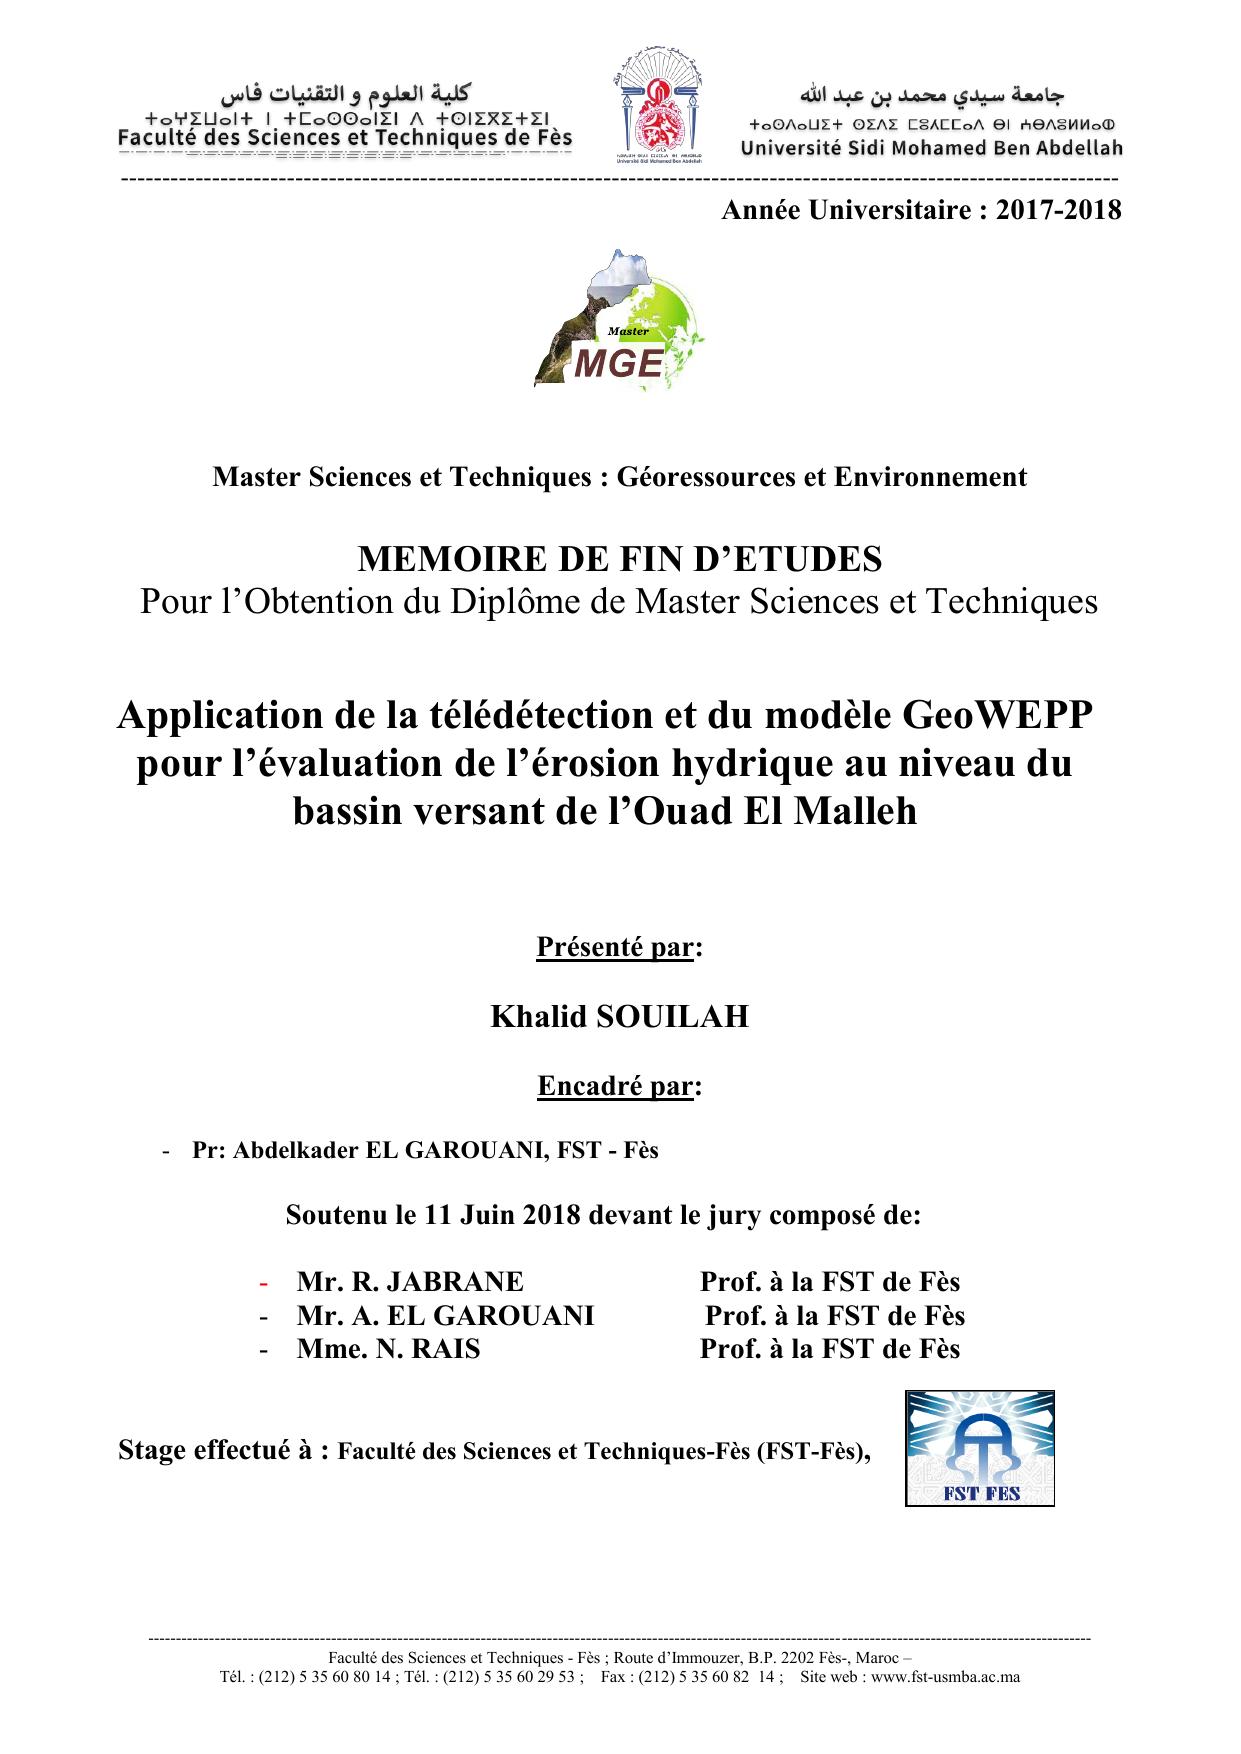 Application de la télédétection et du modèle GeoWEPP pour l’évaluation de l’érosion hydrique au niveau du bassin versant de l’Ouad El Malleh